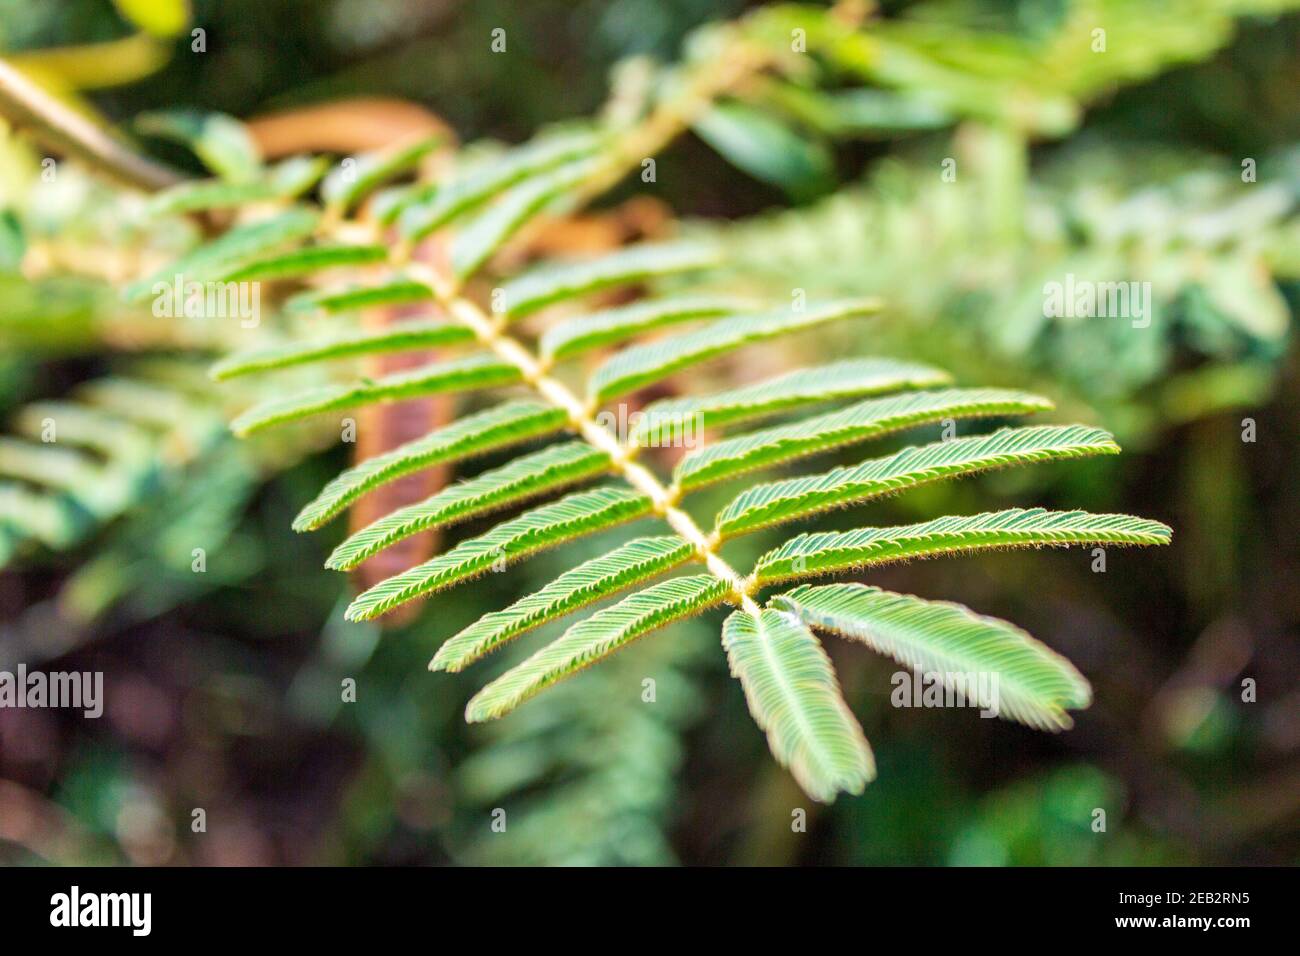 Une touche me ne plante pas avec les feuilles complètement étendues. La plante de honte ou la plante sensible Mimosa pudica a une réaction fascinante lorsqu'elle est touchée. Banque D'Images